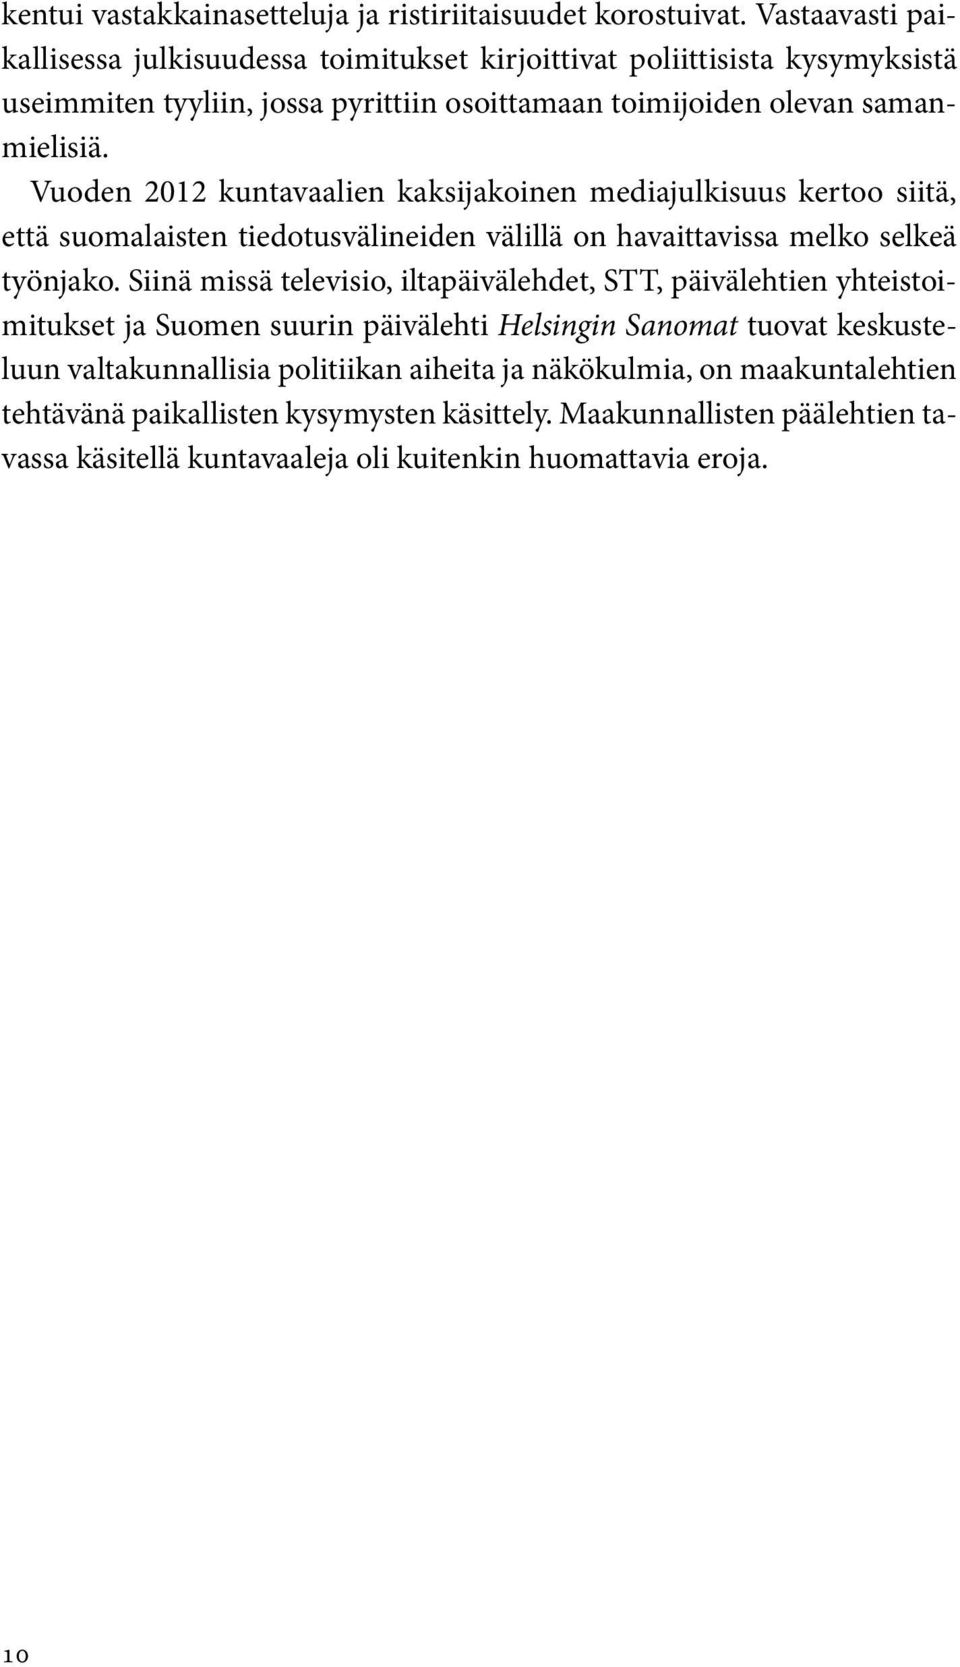 Vuoden 2012 kuntavaalien kaksijakoinen mediajulkisuus kertoo siitä, että suomalaisten tiedotusvälineiden välillä on havaittavissa melko selkeä työnjako.